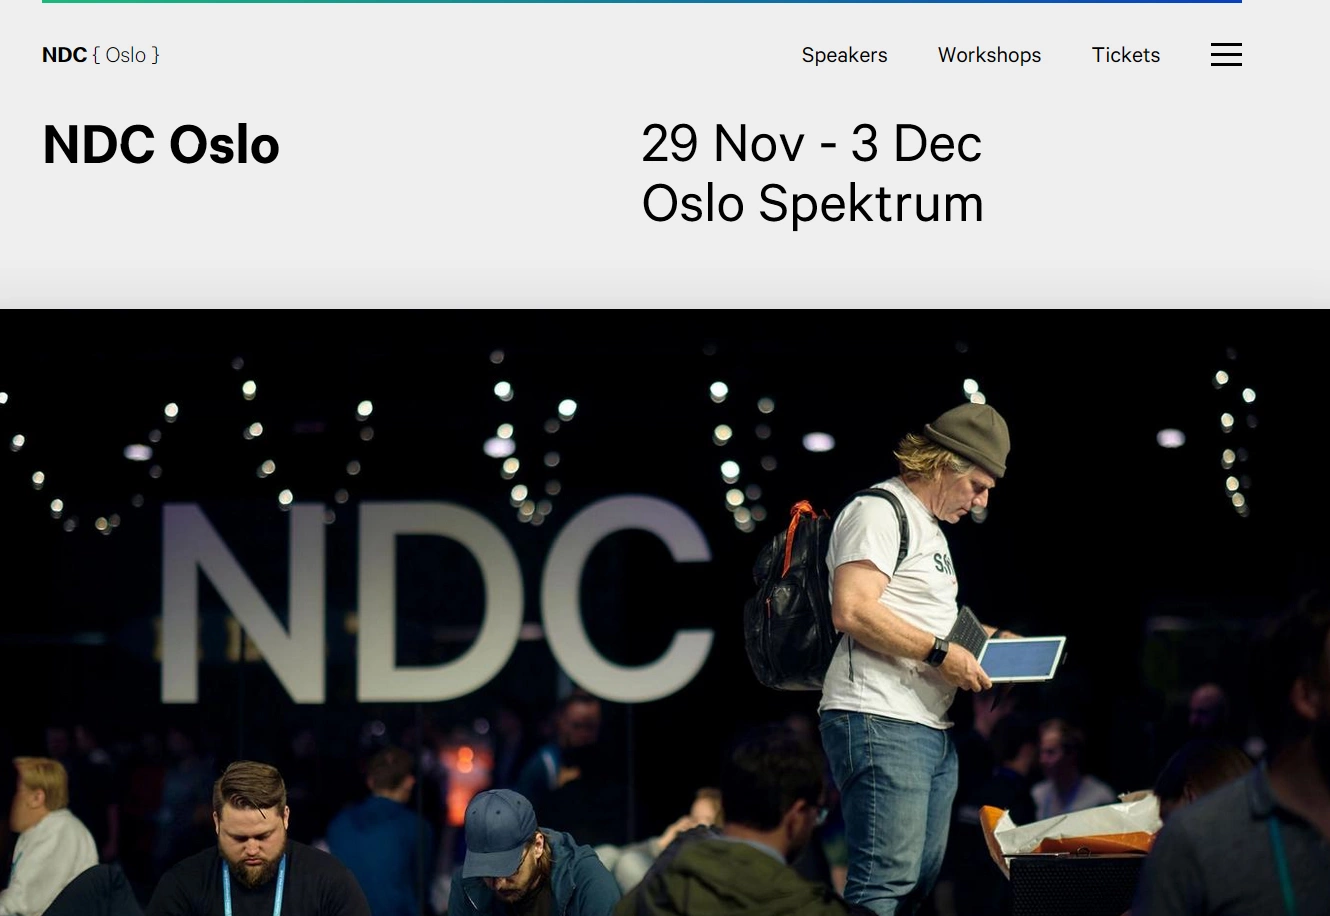 NDC Oslo website